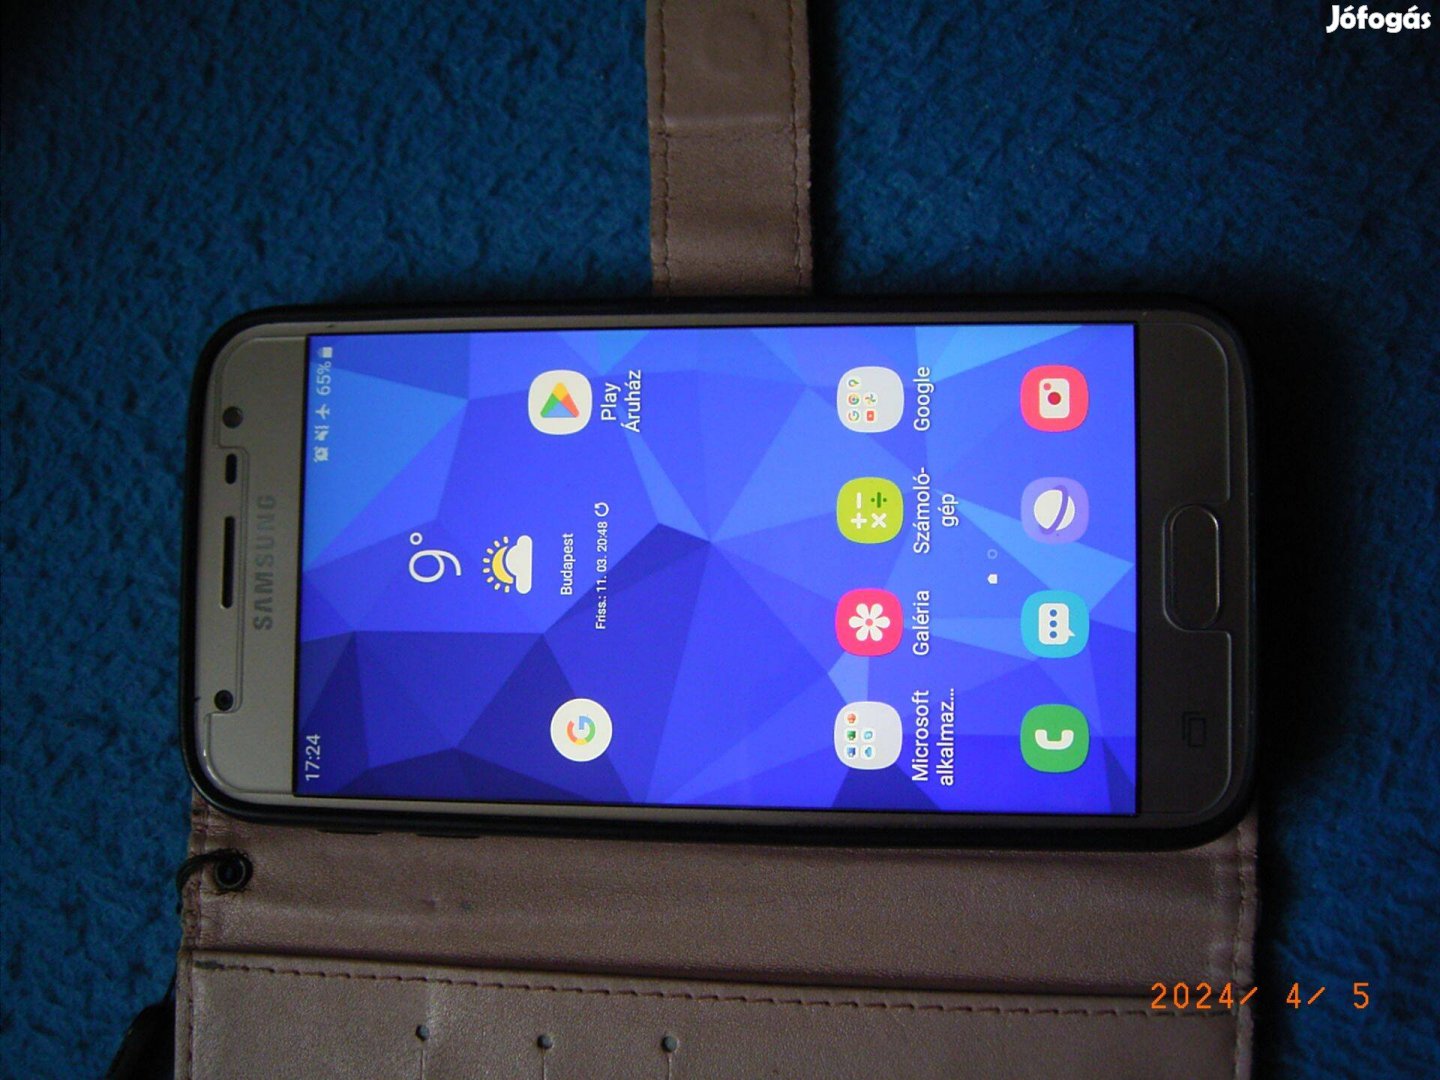 Samsung Galaxy J3 2017 mobil jó állapotban, tokkal, üvegfóliázva